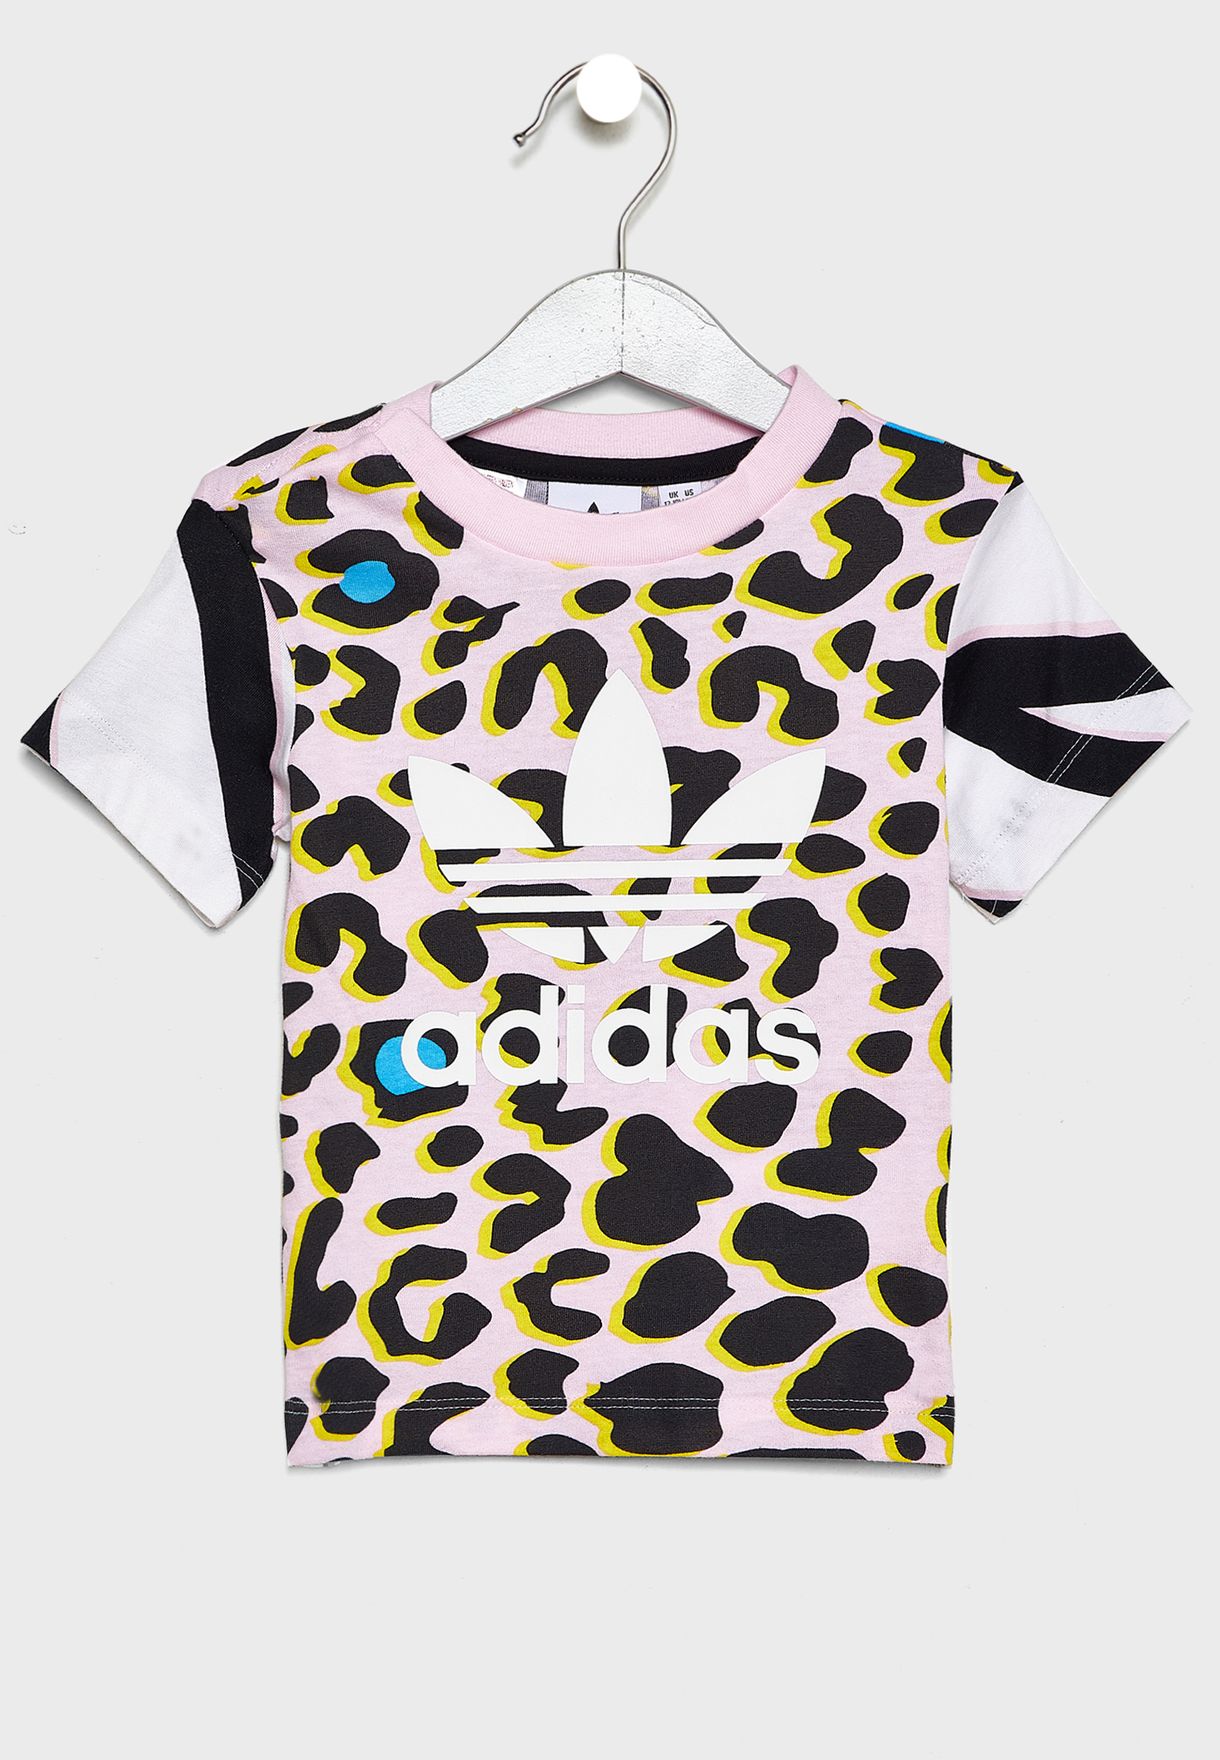 adidas leopard t shirt